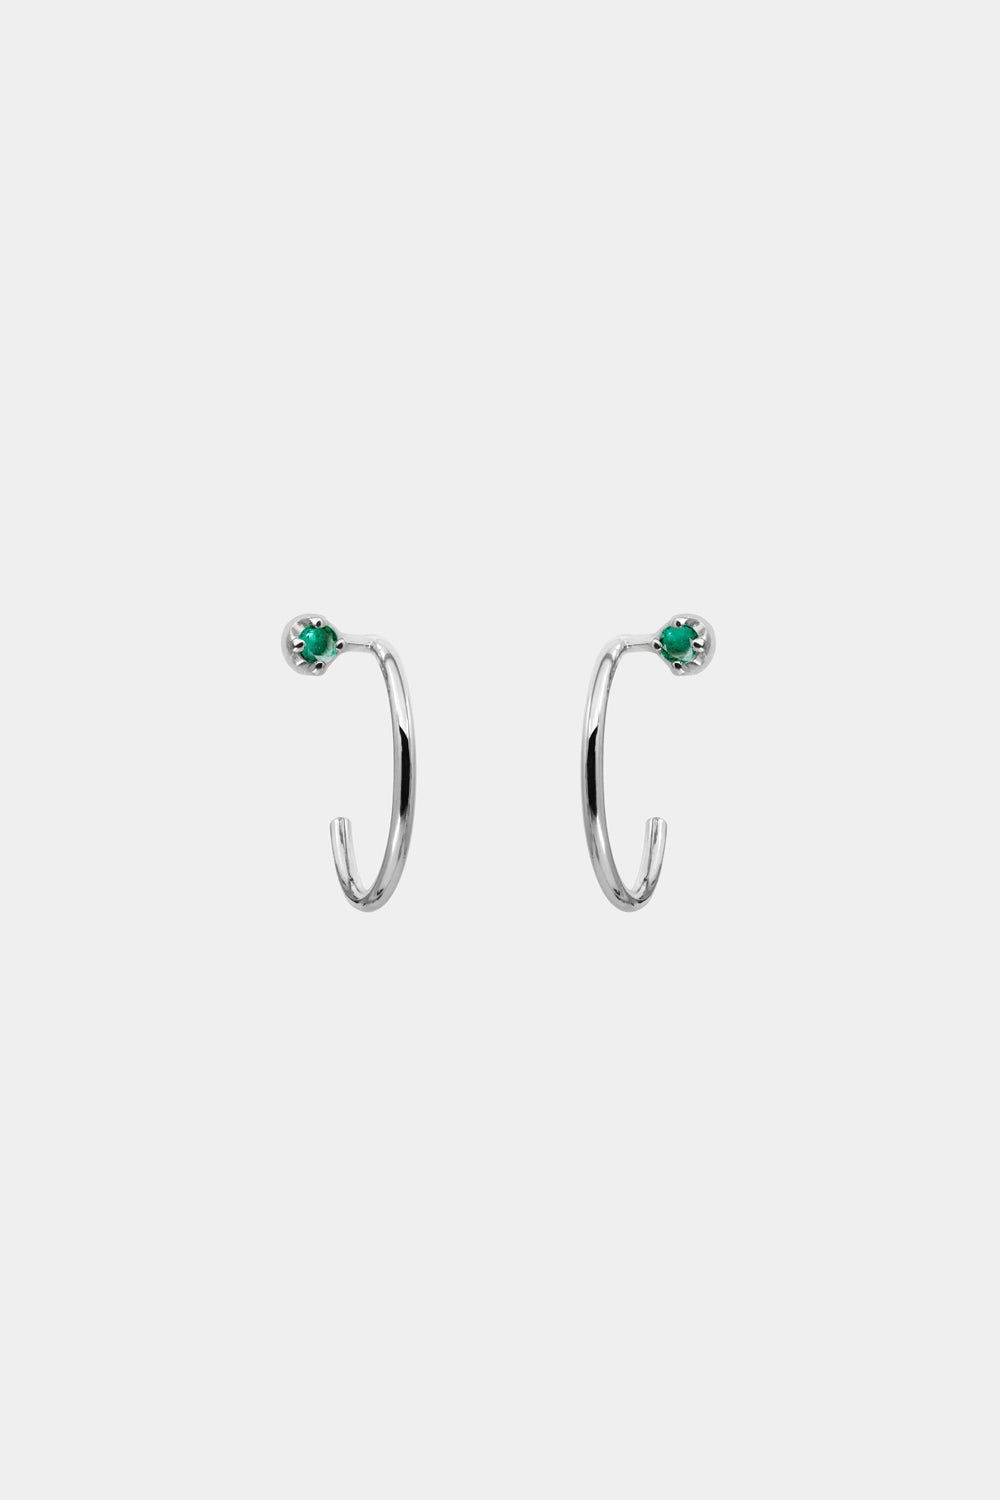 Mini Lara Emerald Hoop Earrings | 9K White Gold| Natasha Schweitzer